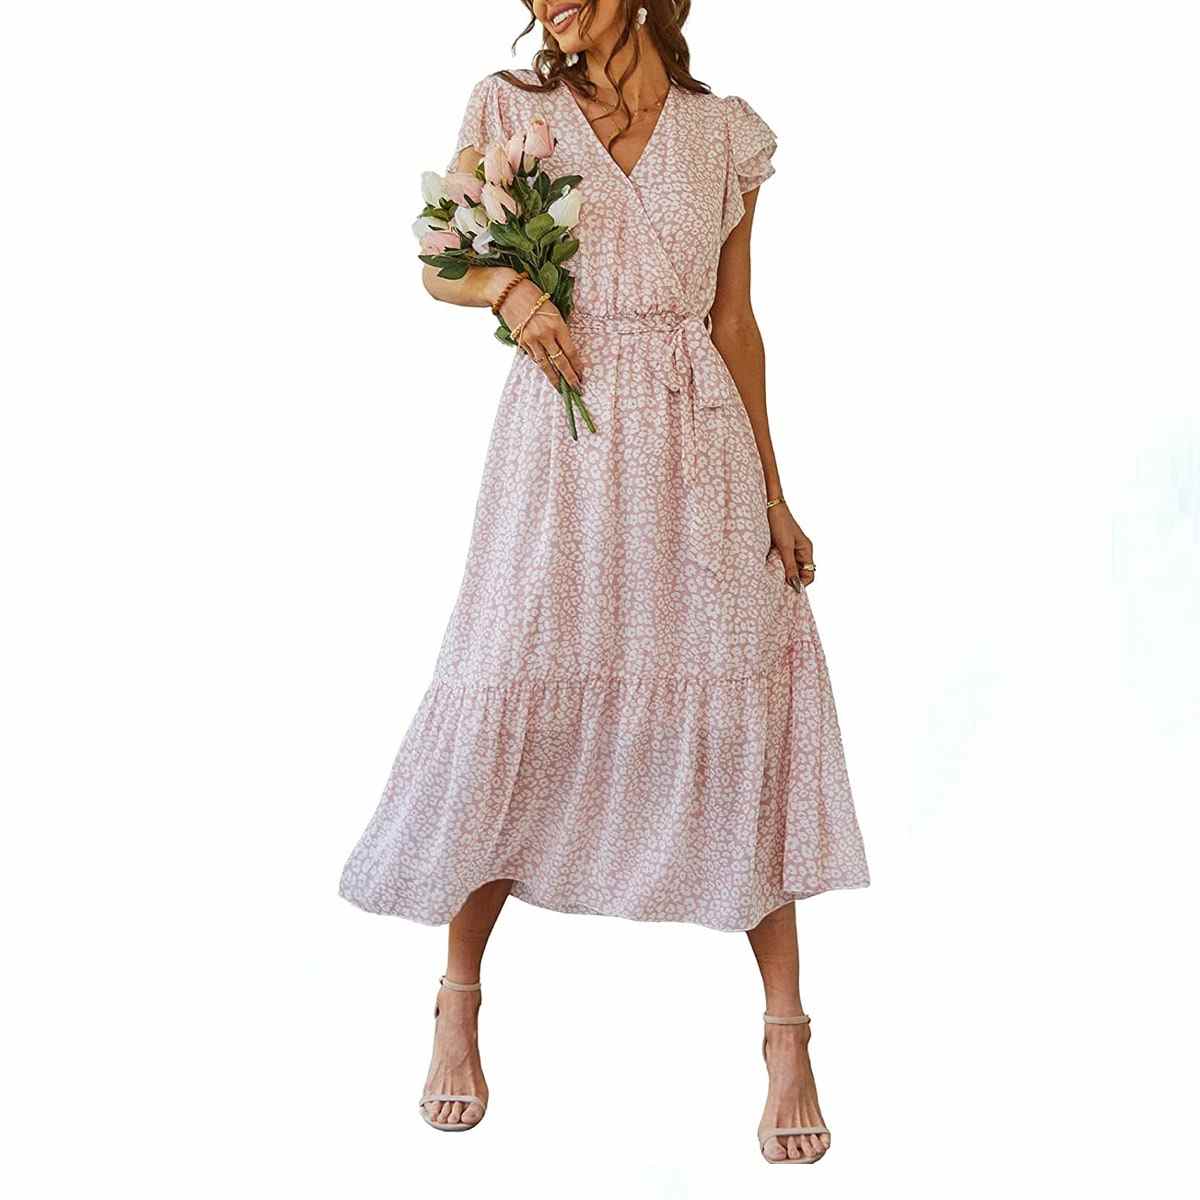 Rosa Prettygarden Sommerkleid mit Blumenmuster auf Modell mit Blumenstrauß